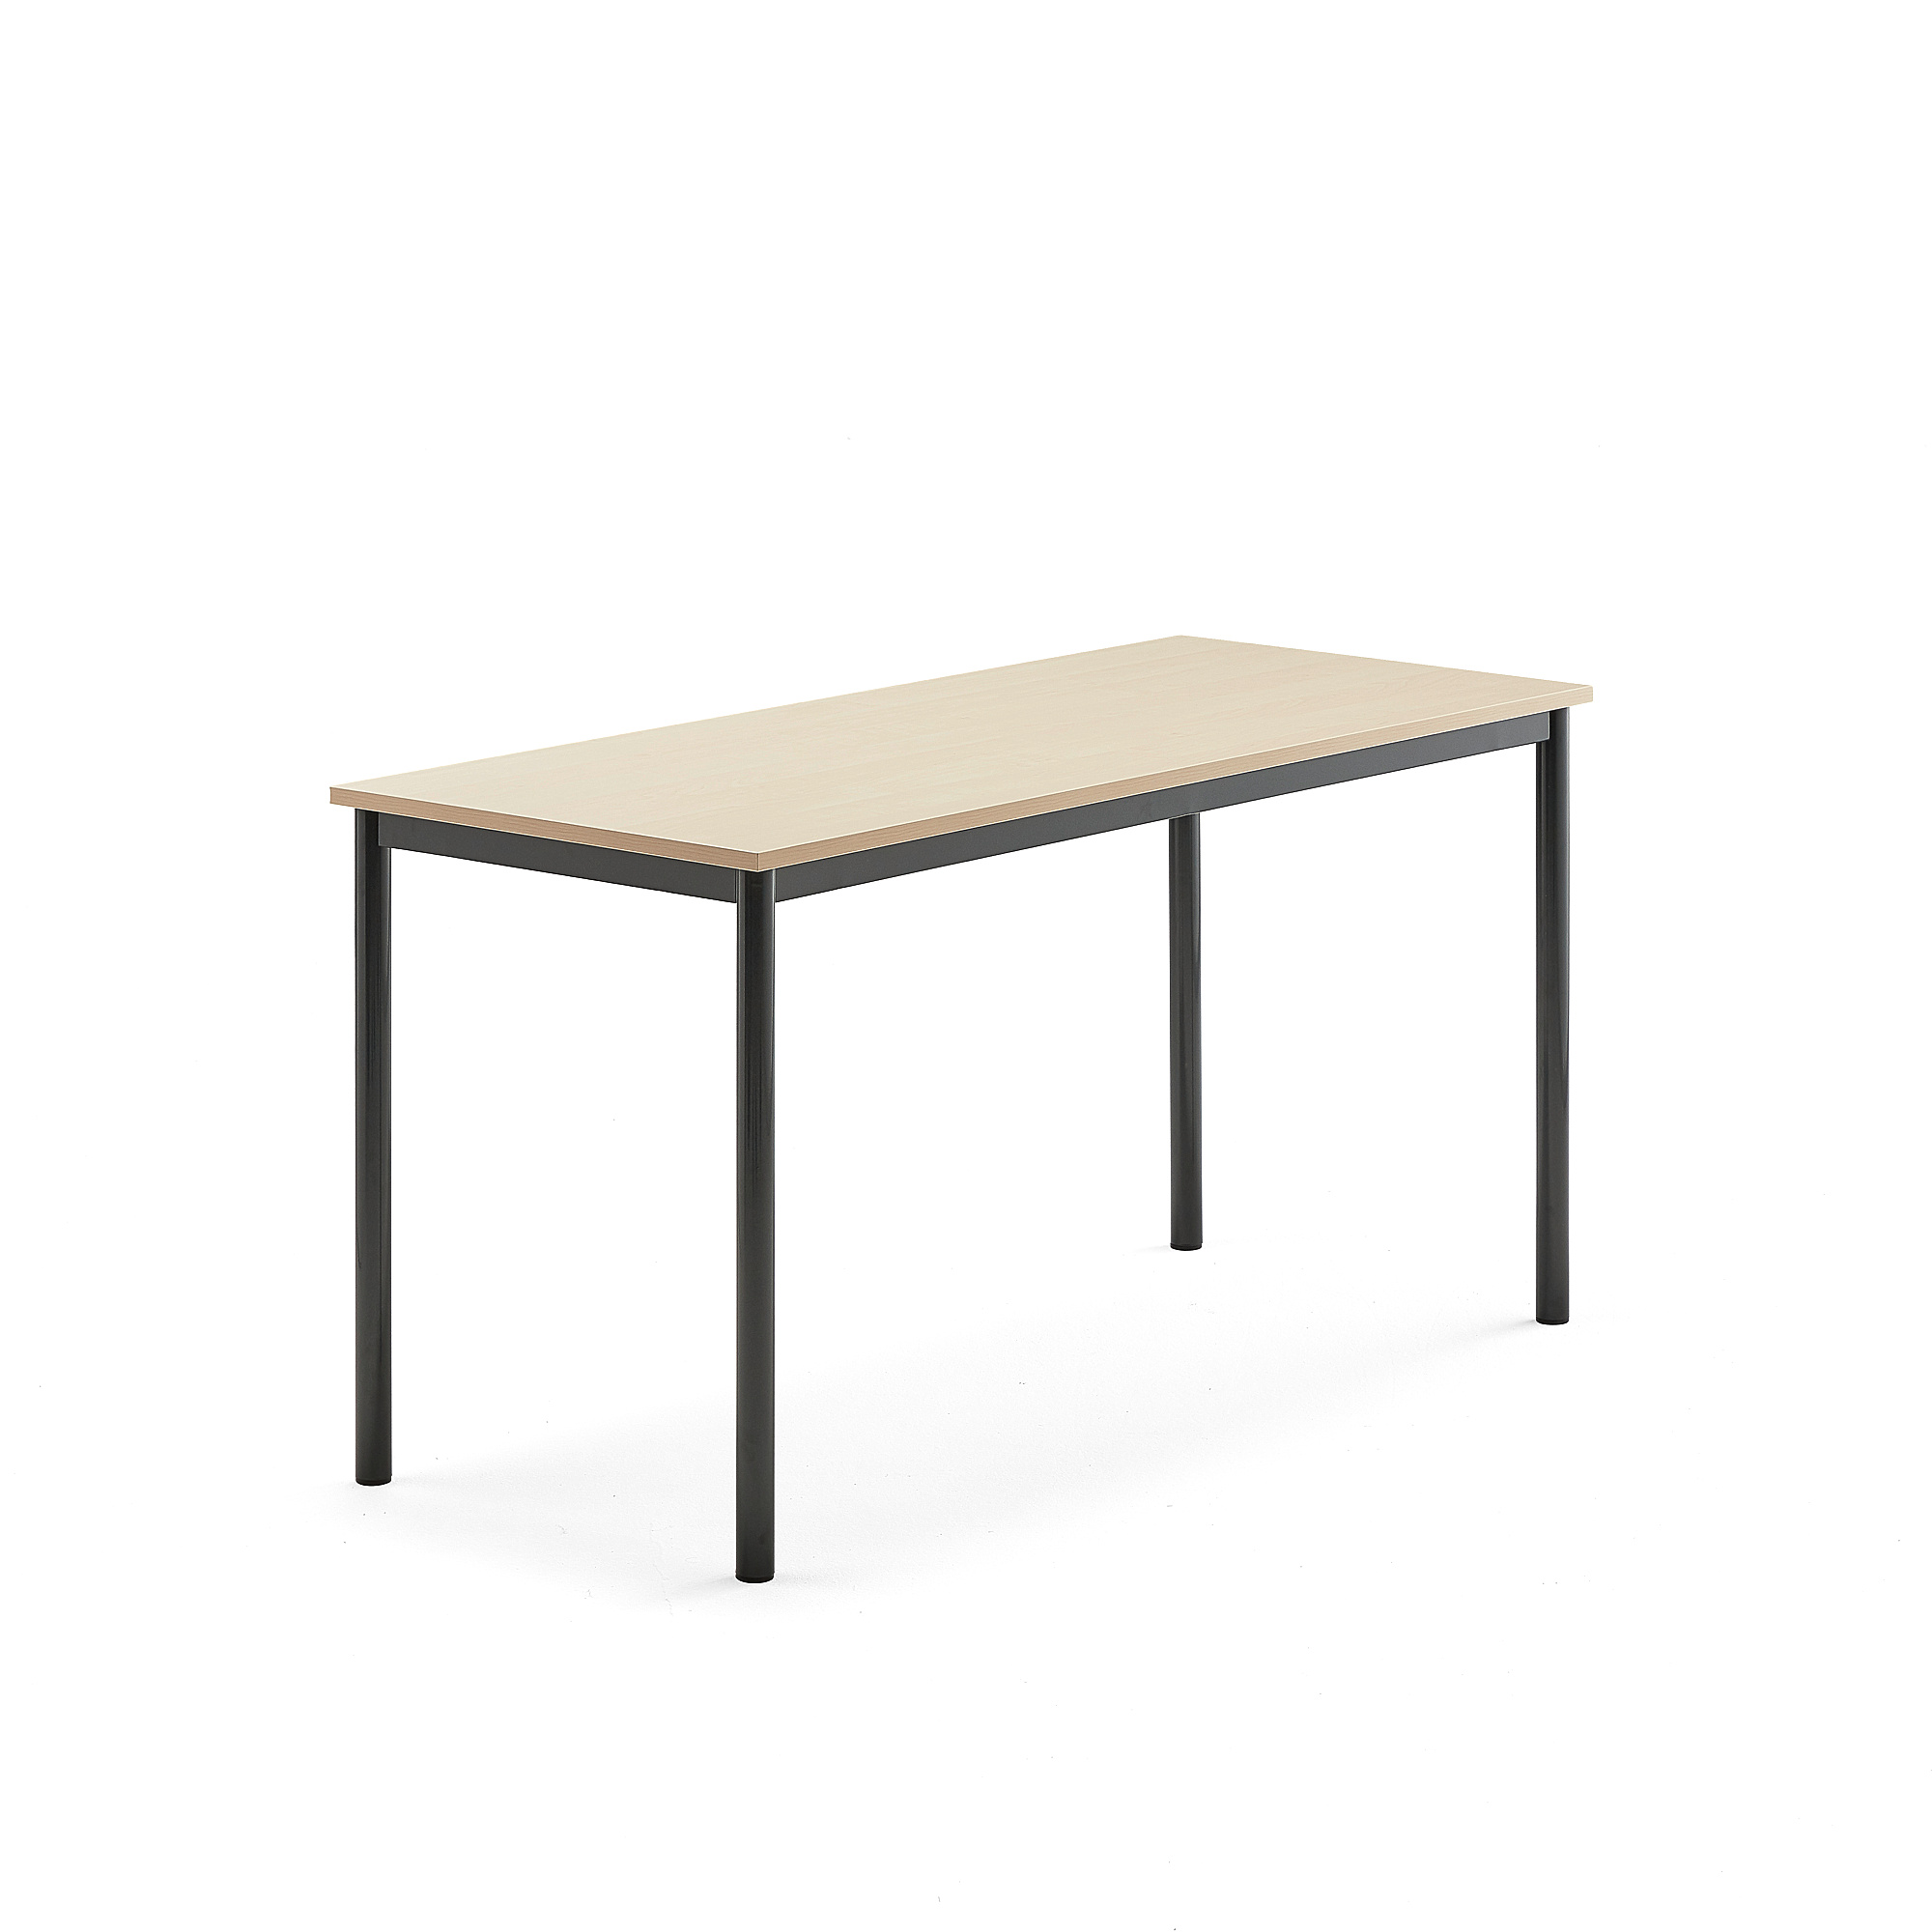 Stůl SONITUS, 1400x600x720 mm, antracitově šedé nohy, HPL deska tlumící hluk, bříza